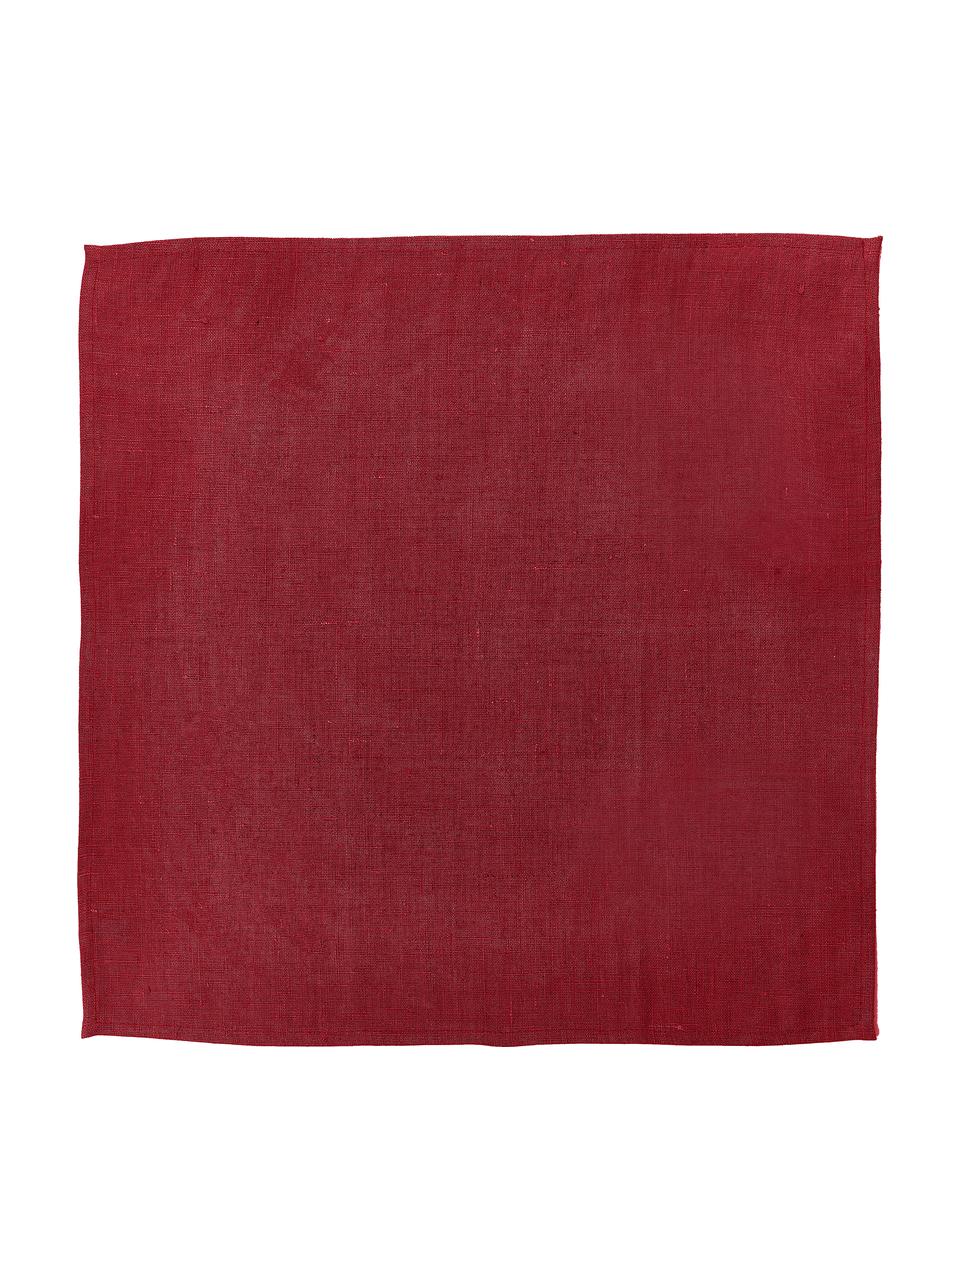 Serwetka z lnu Heddie, 2 szt., 100% len, Czerwony, S 45 x D 45 cm